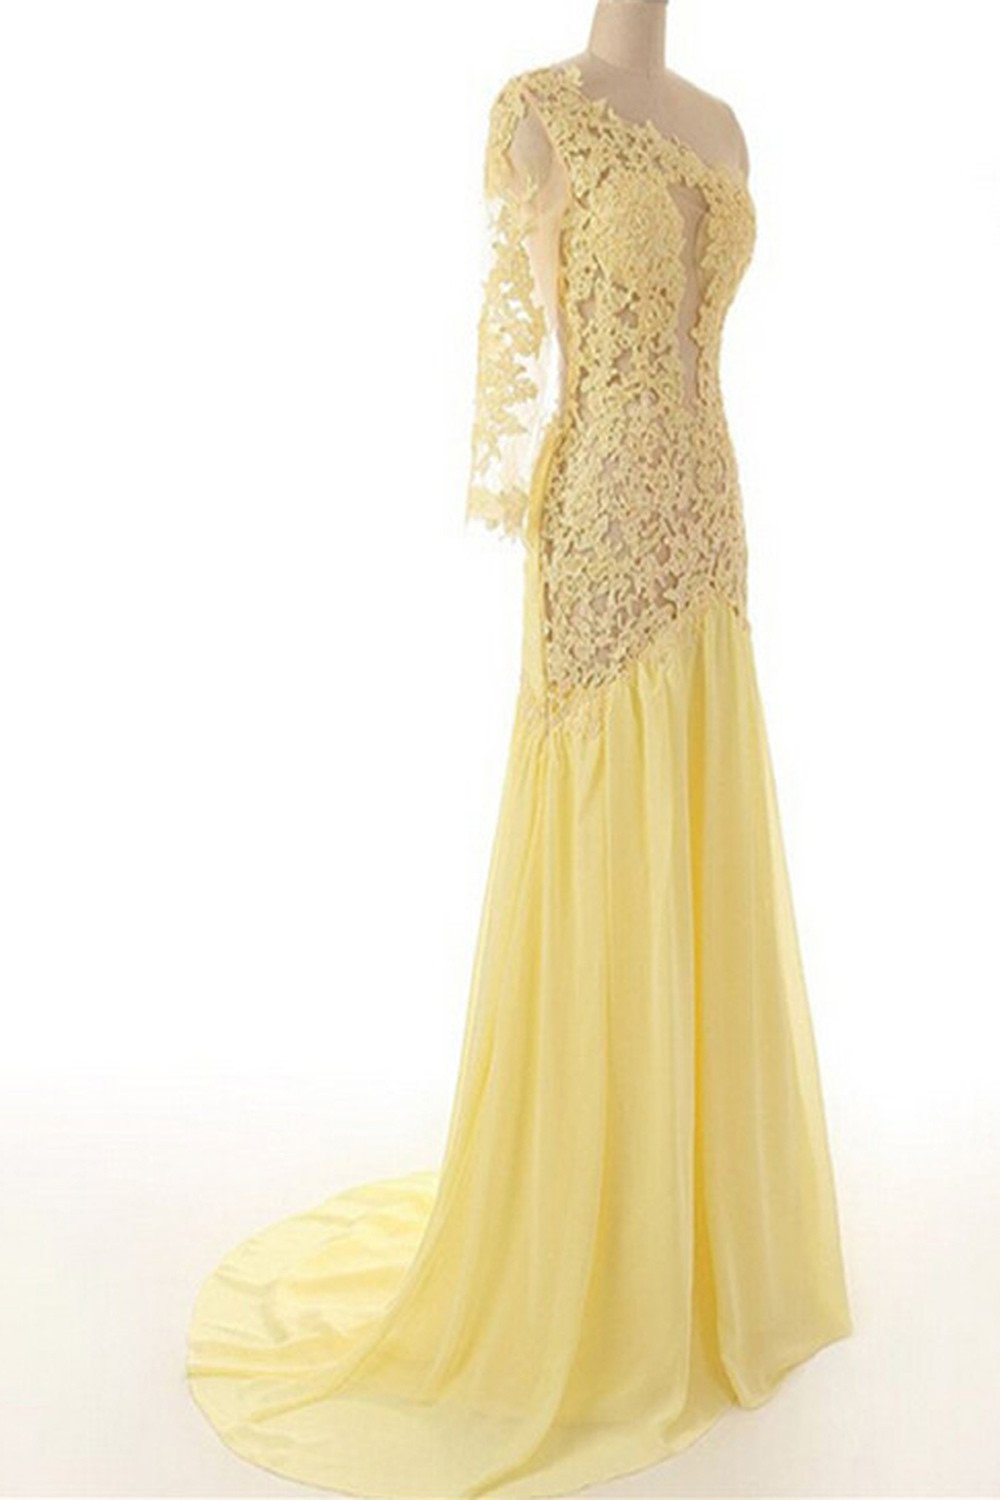 Lace Chiffon Daffodil Long Prom Dresses Evening Dresses ED0649